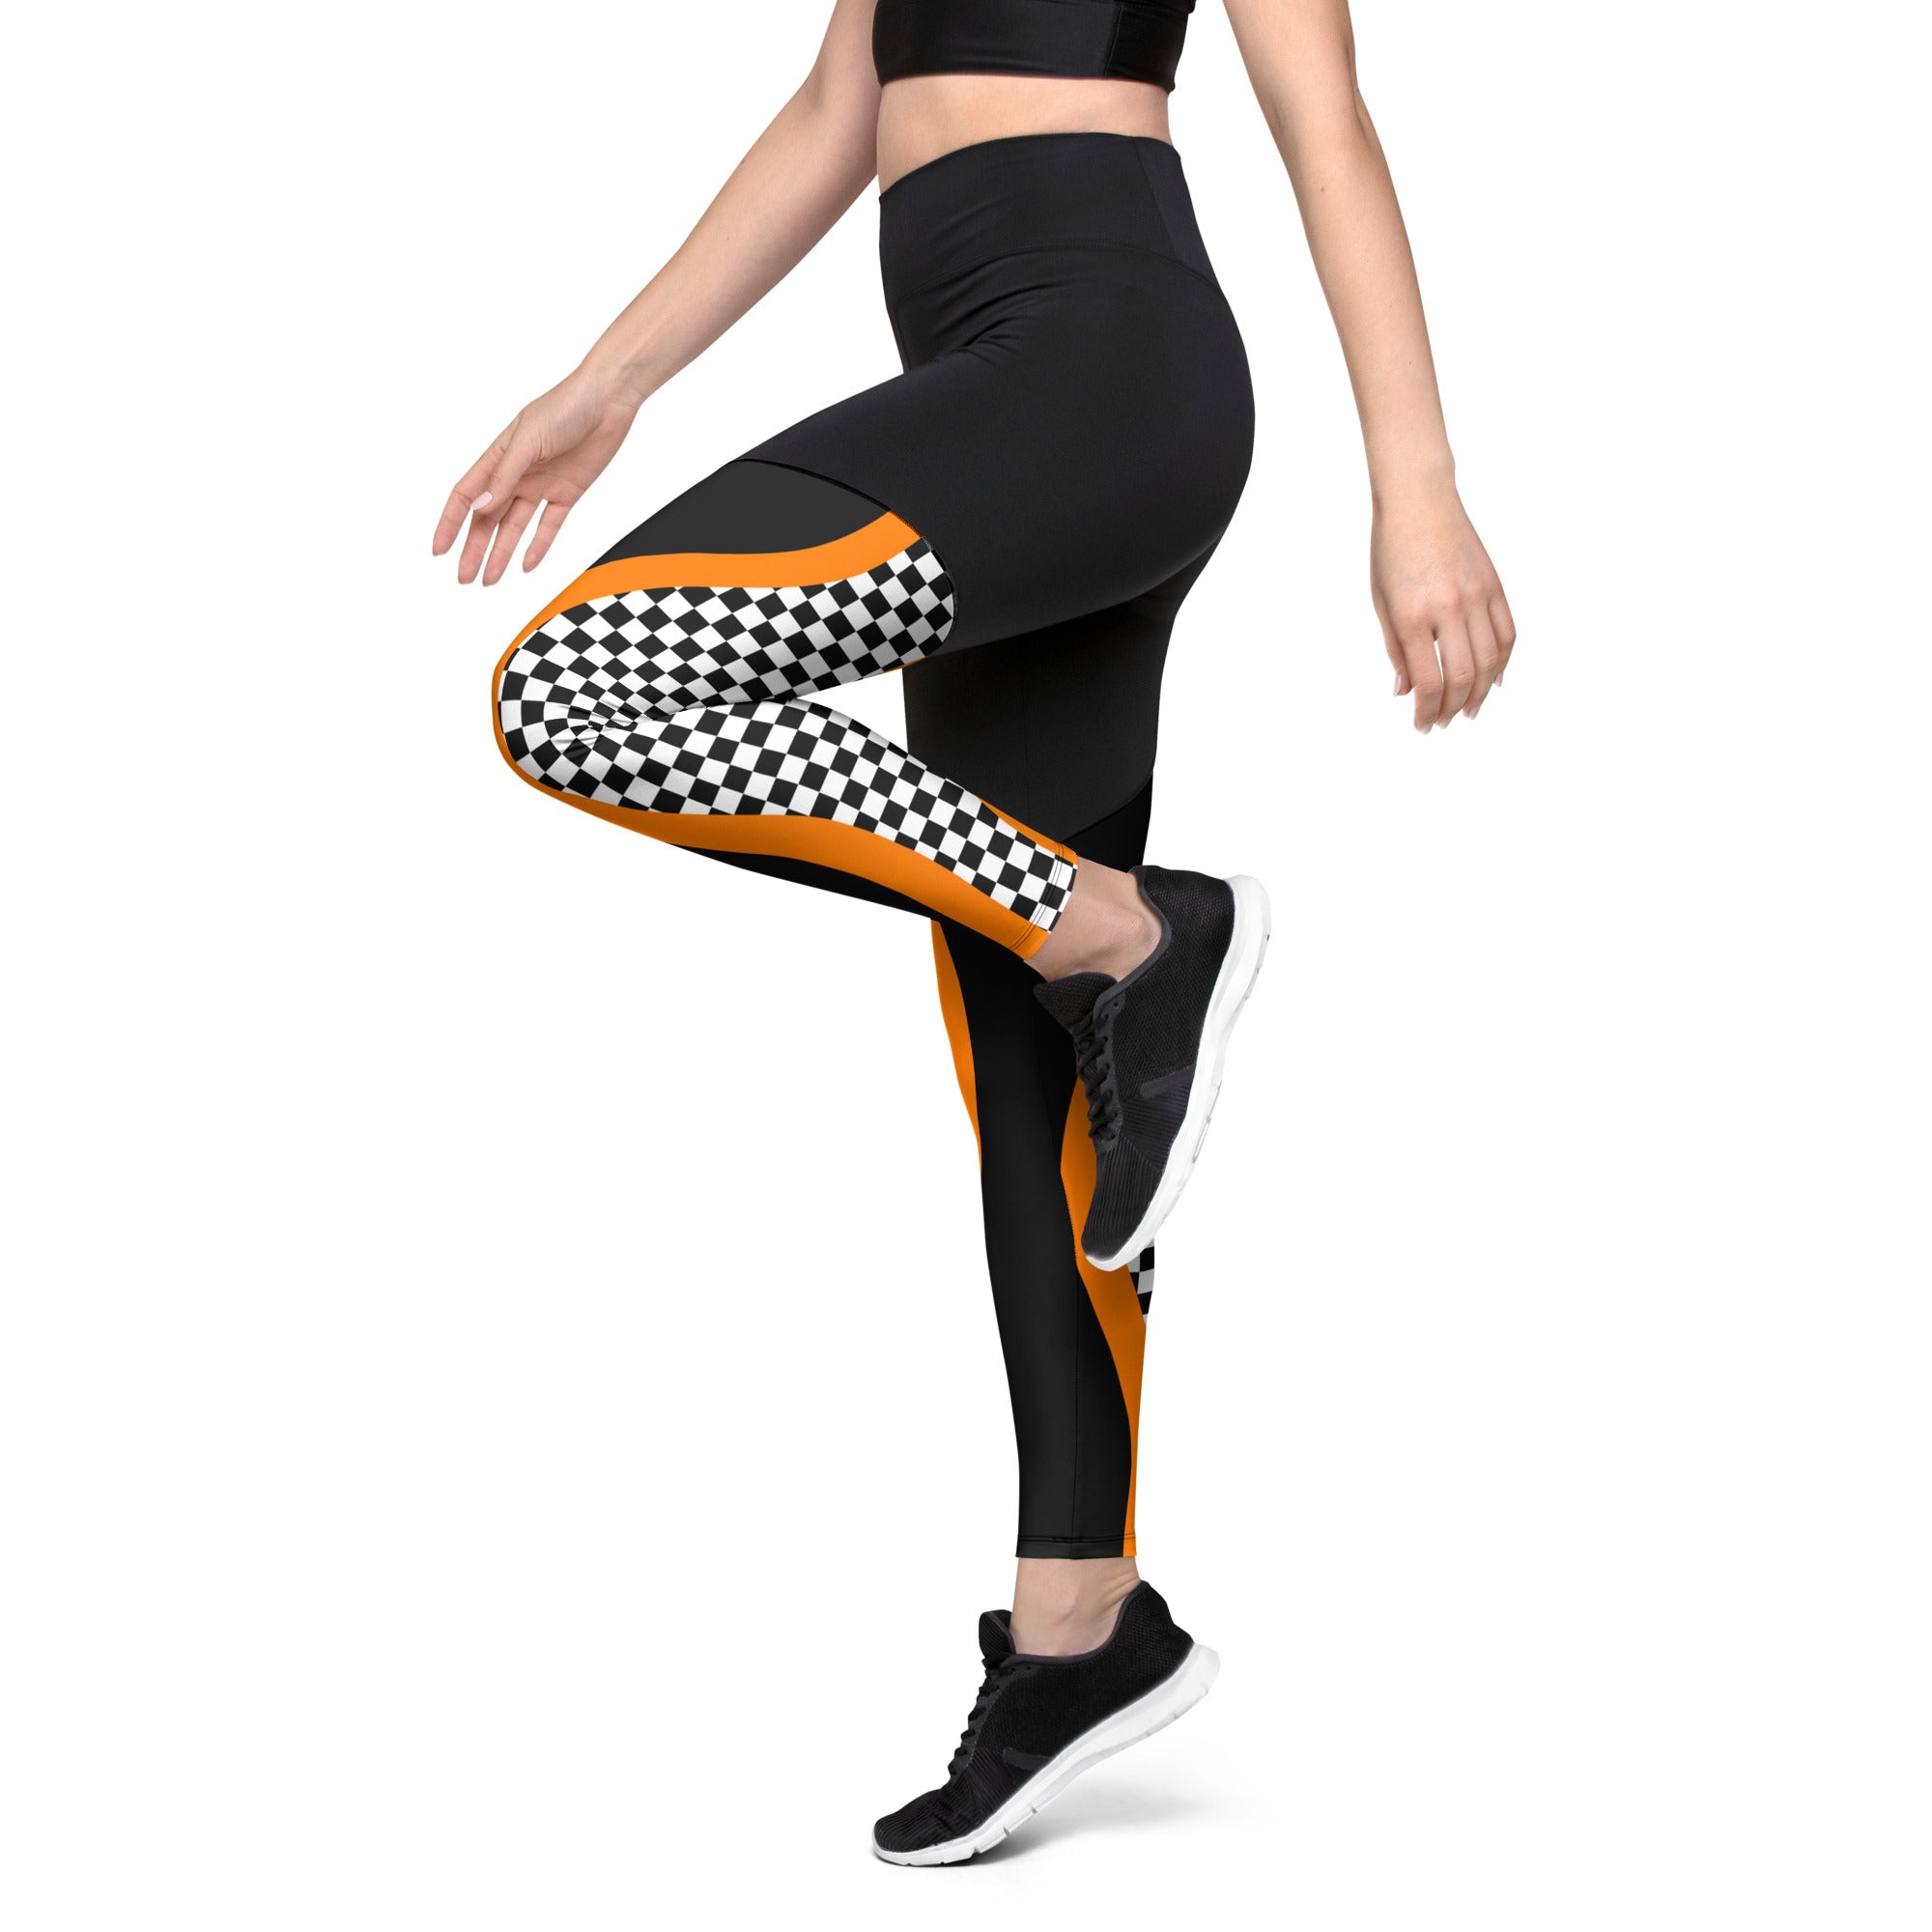 Black and Orange Checkered Compression Leggings